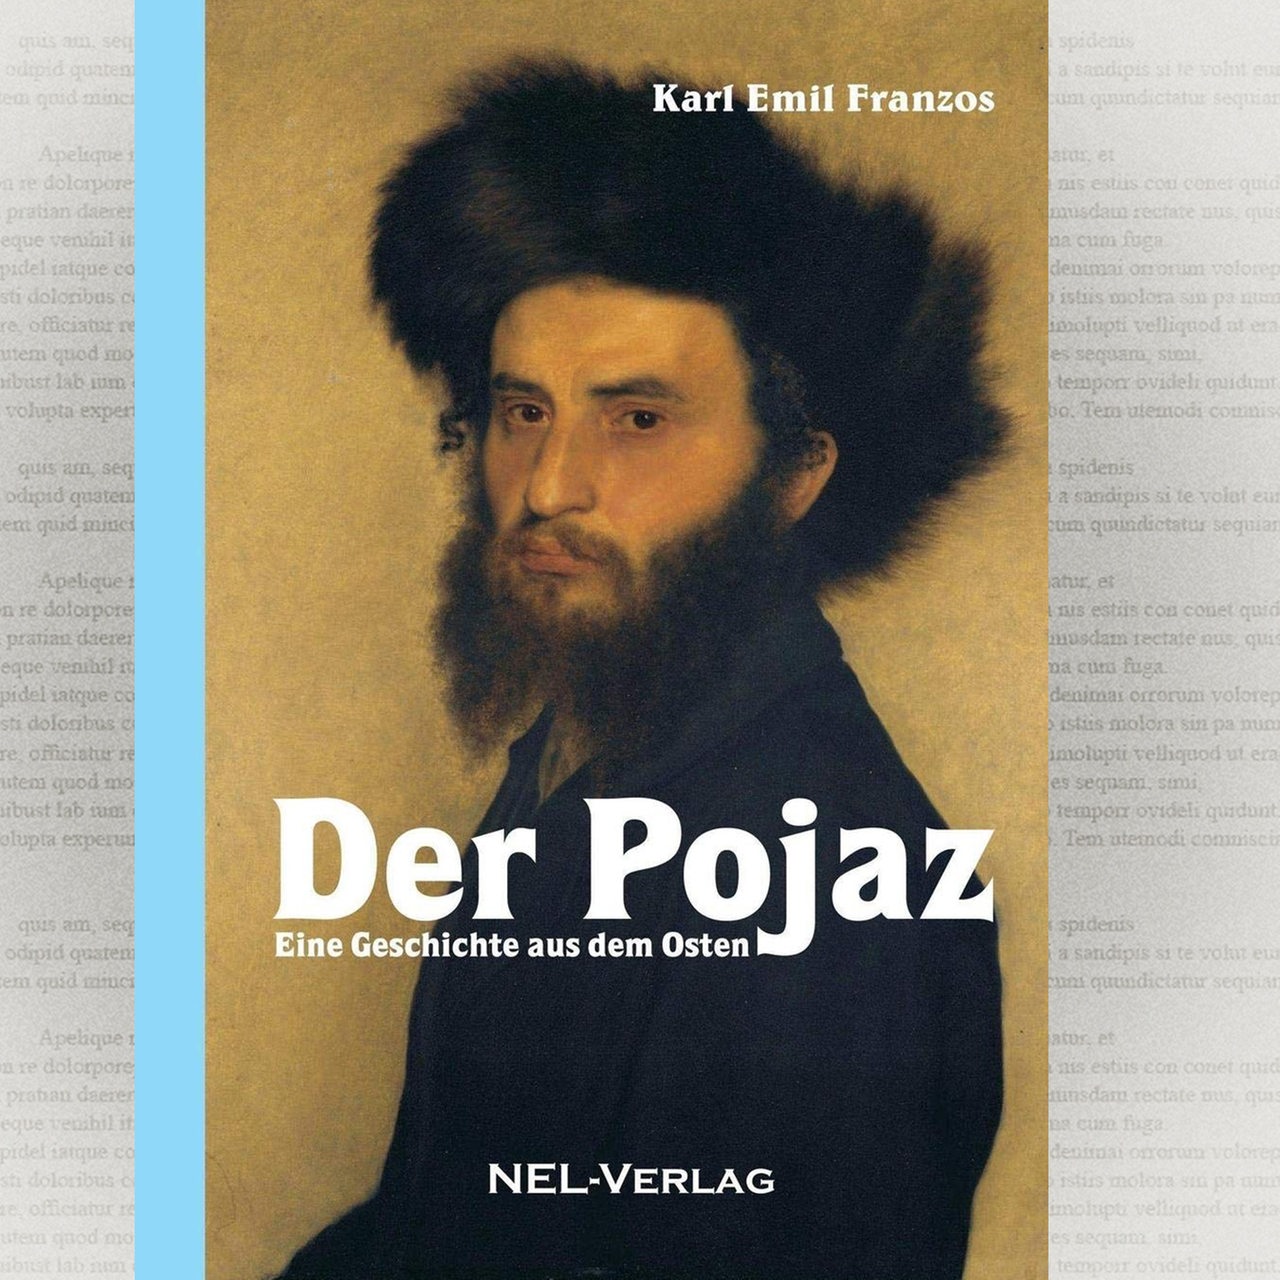 Cover: Der Pojaz